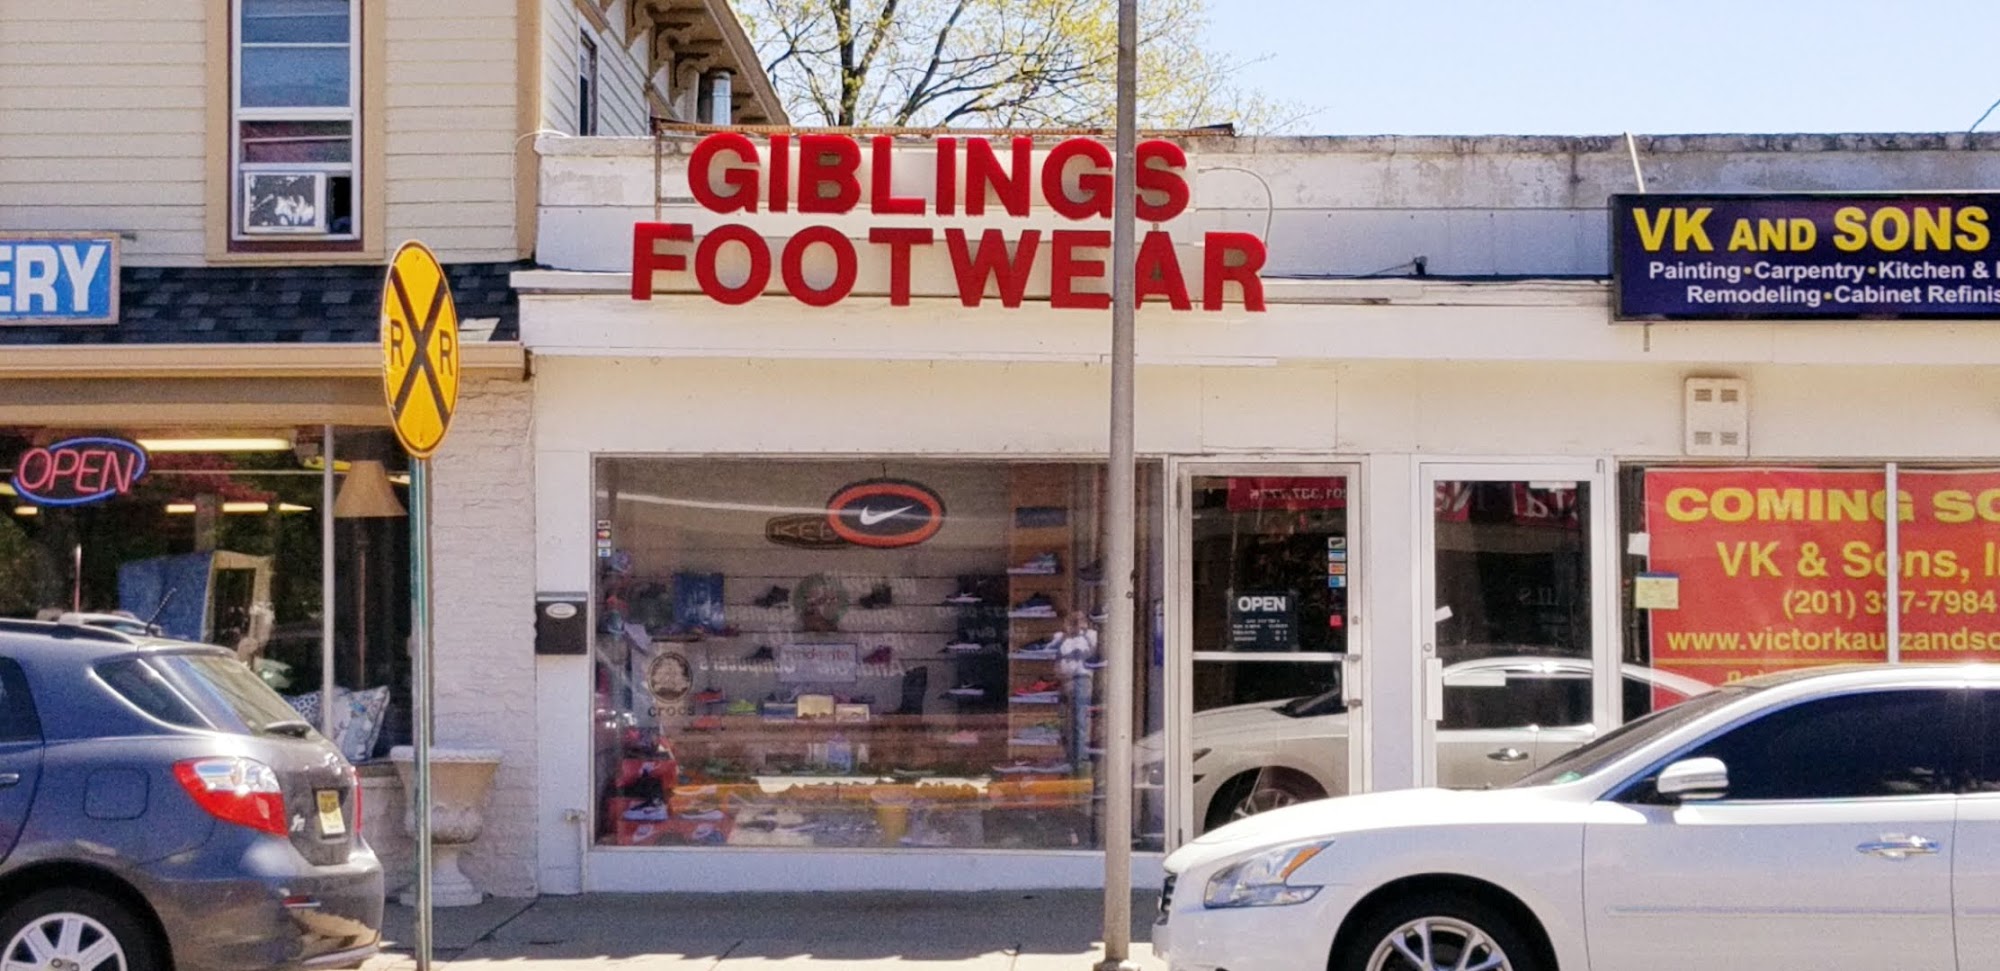 Gibling's Footwear